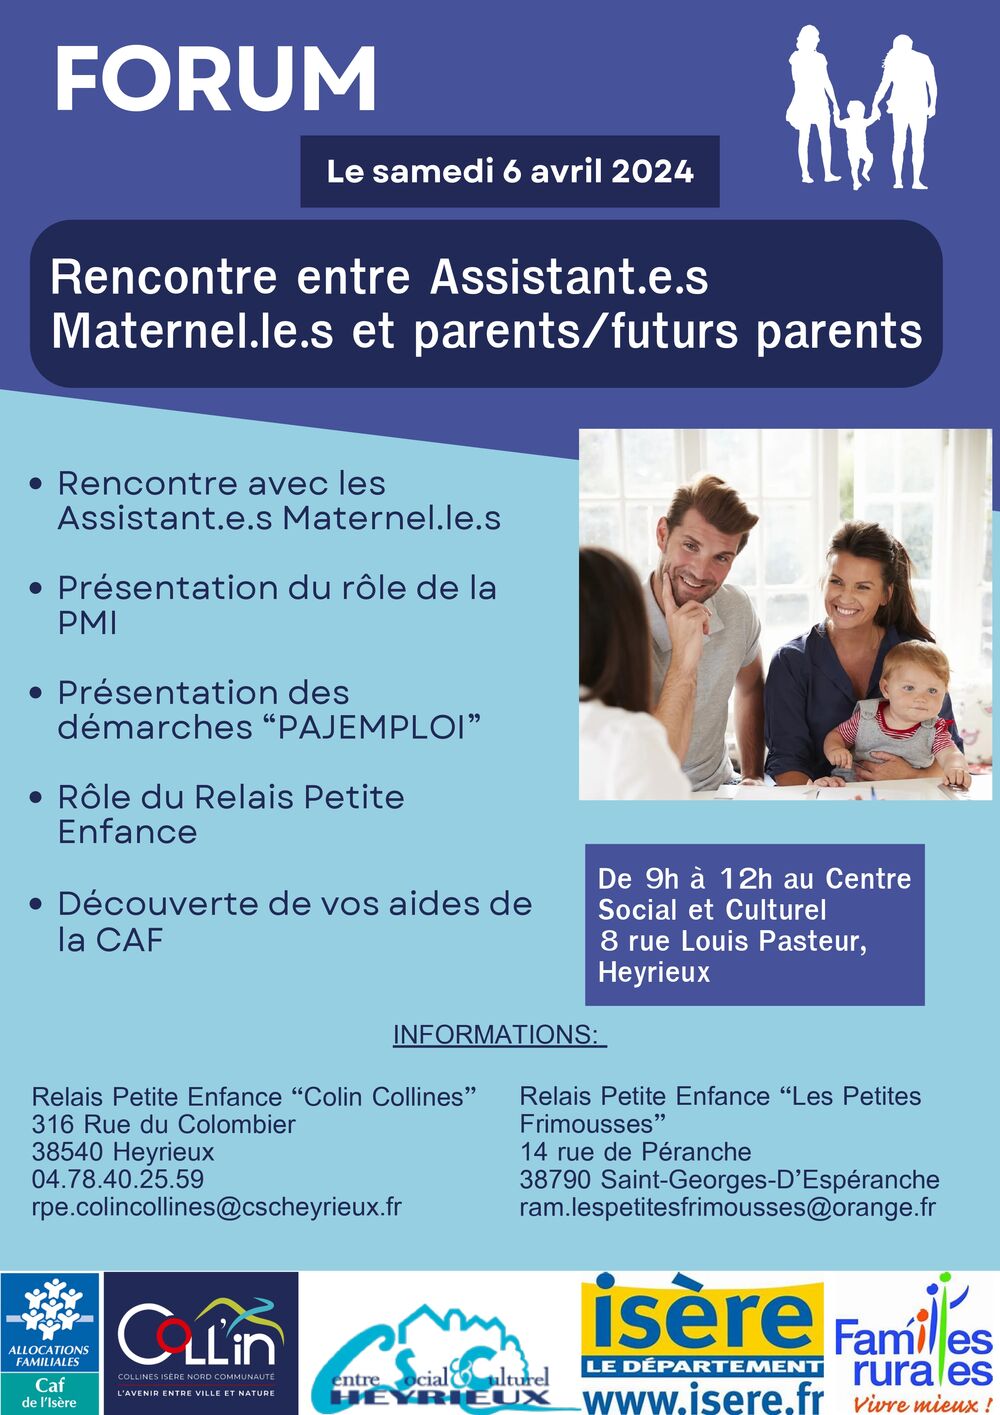 Forum de rencontres entre (futurs) parents et assistantes maternelles.